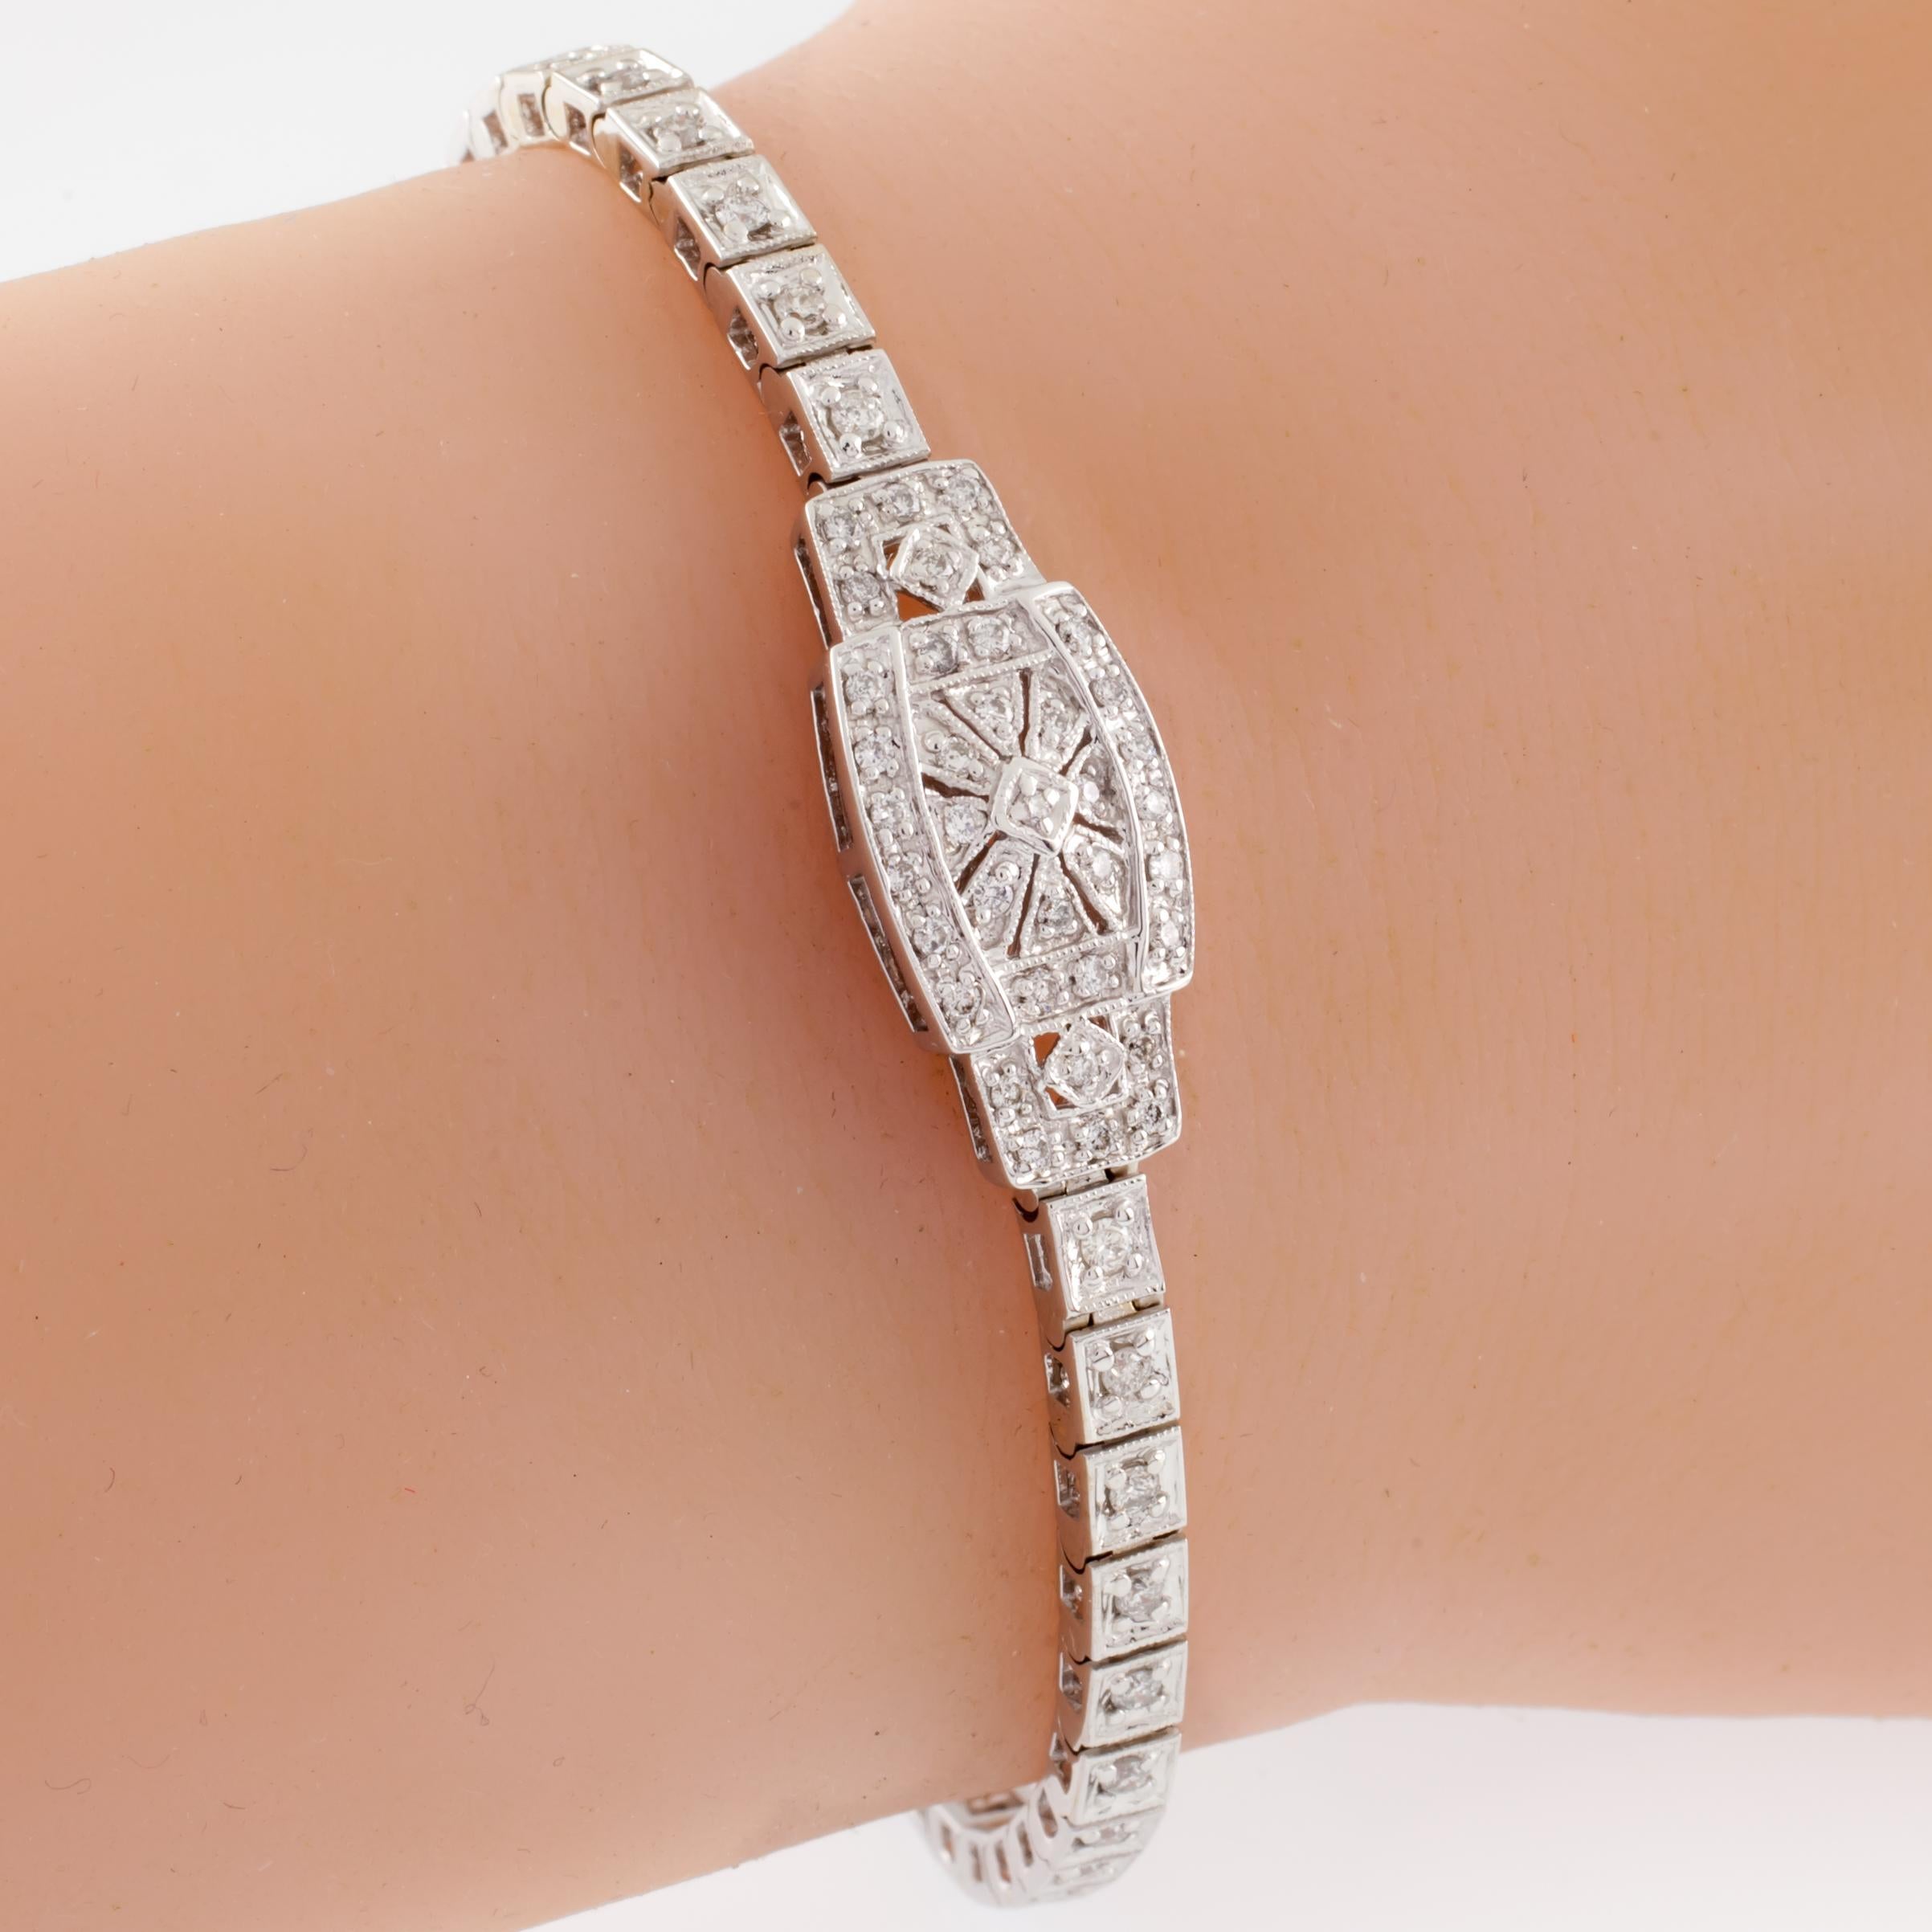 Wunderschönes Armband im Art-Déco-Stil
Mit rundem Diamanten im Pave-Set auf dem Band
Runde Diamanten in schönem Sunburst-Muster auf Plakette
Gesamtgewicht der Diamanten = 1.00 ct
Durchschnittliche Farbe = G - H
Durchschnittliche Reinheit = SI1 -